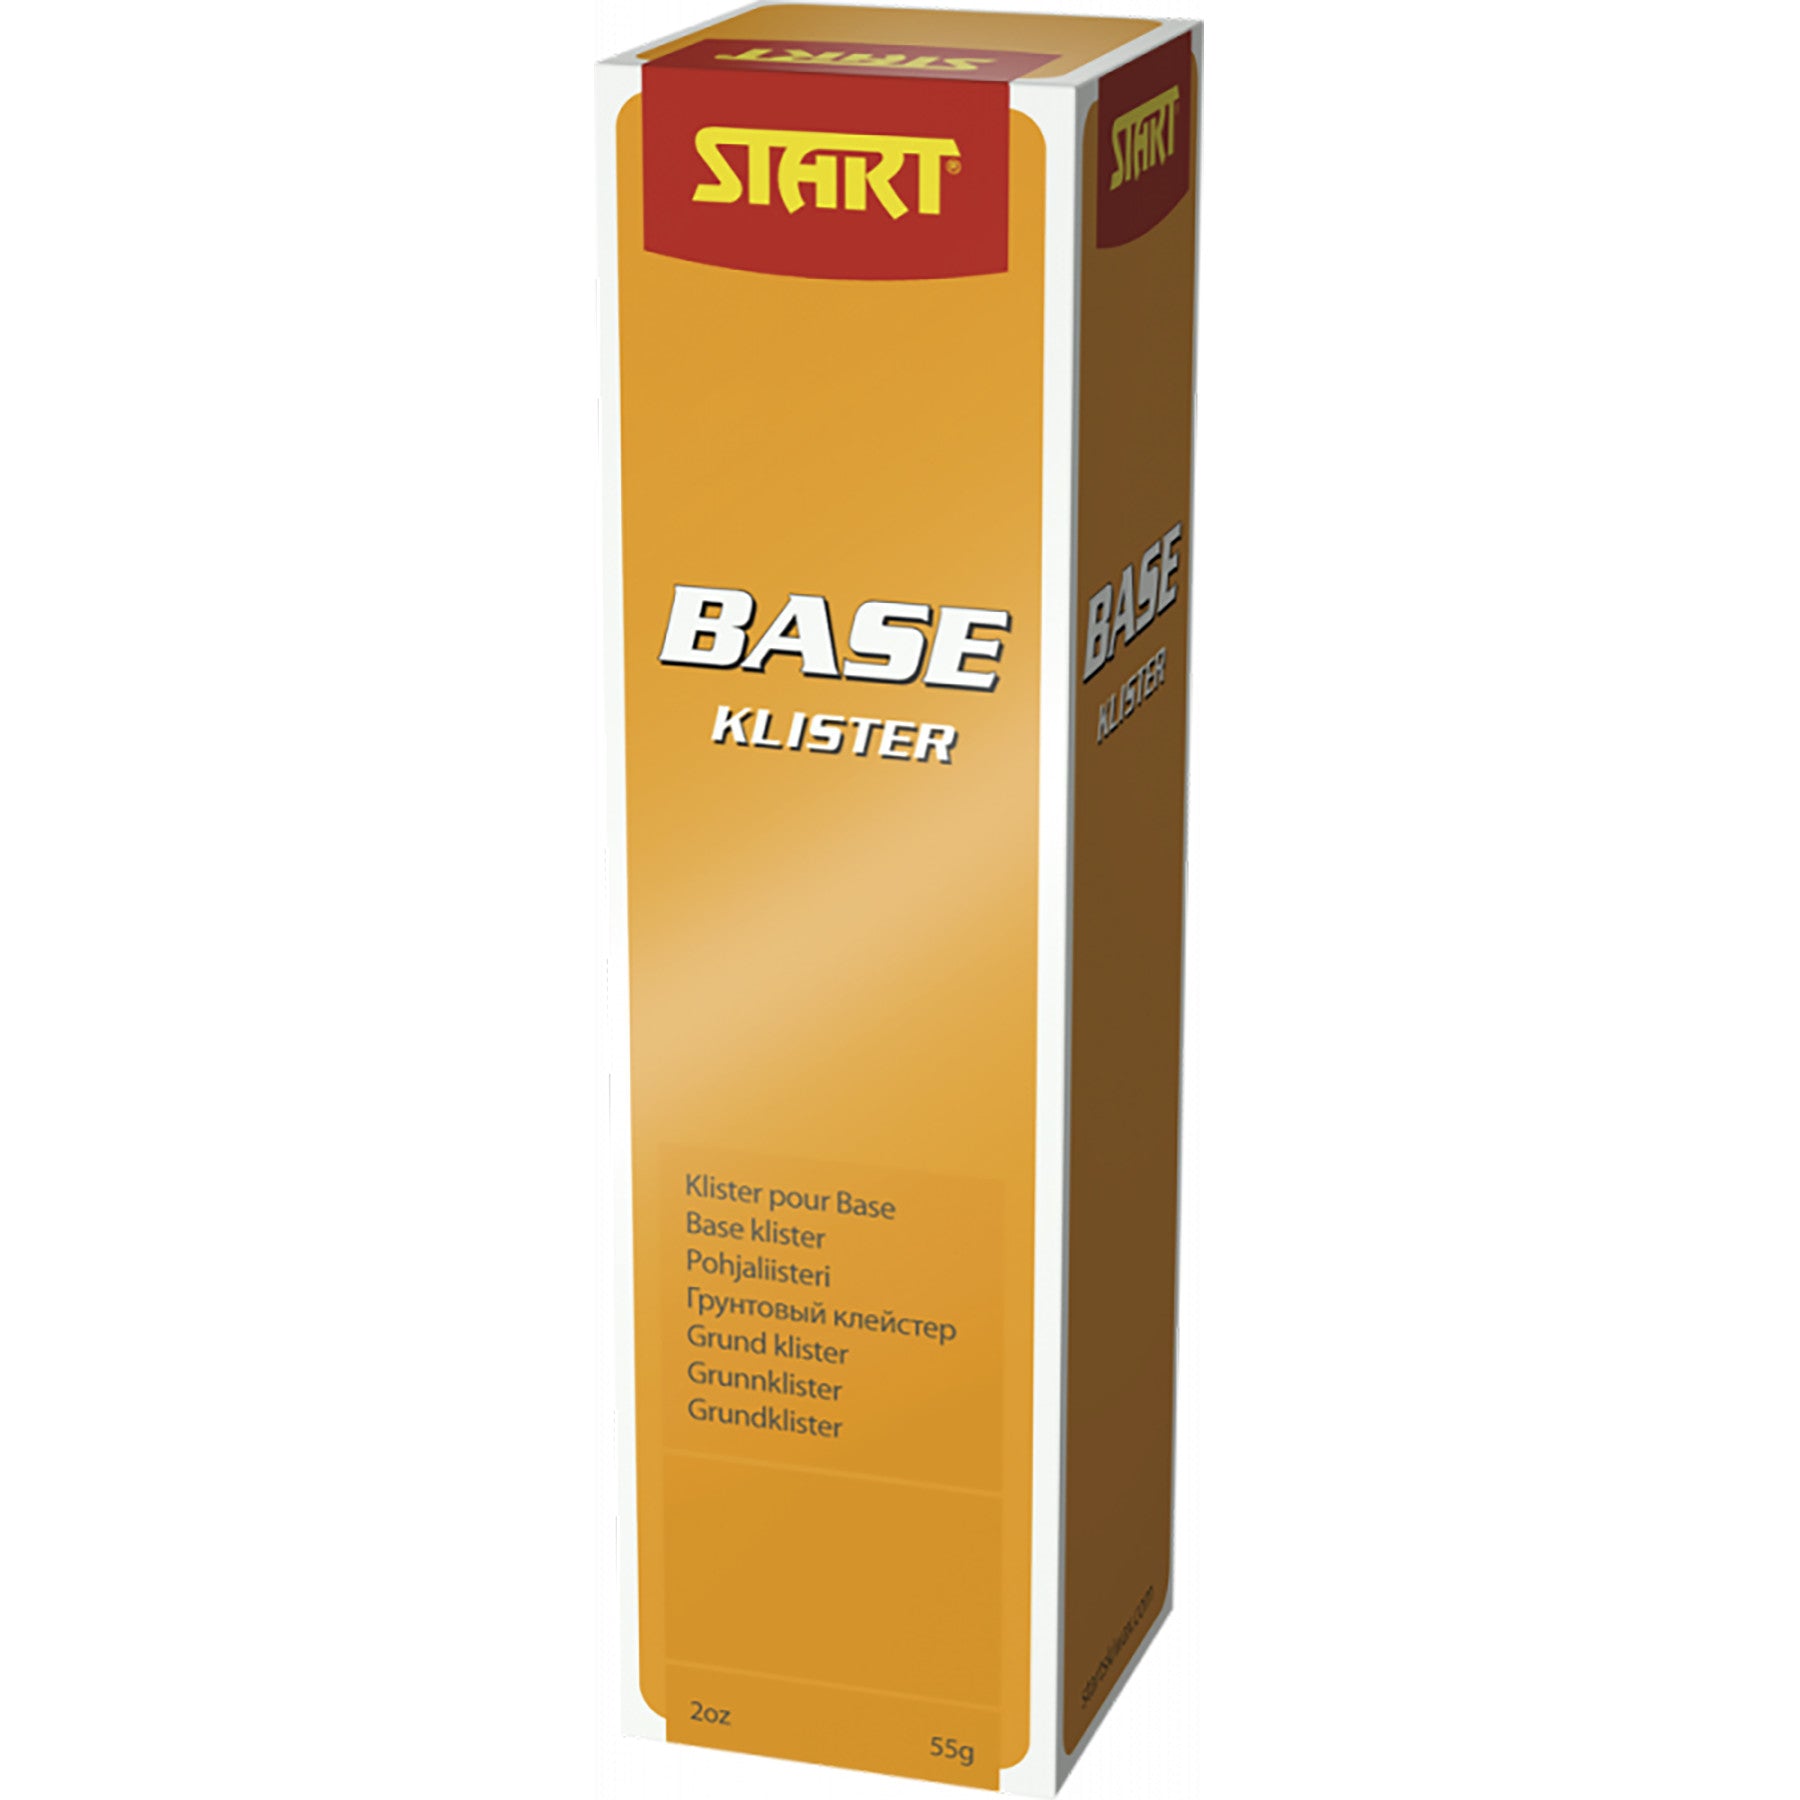 Buy base Start Klister 55g tube